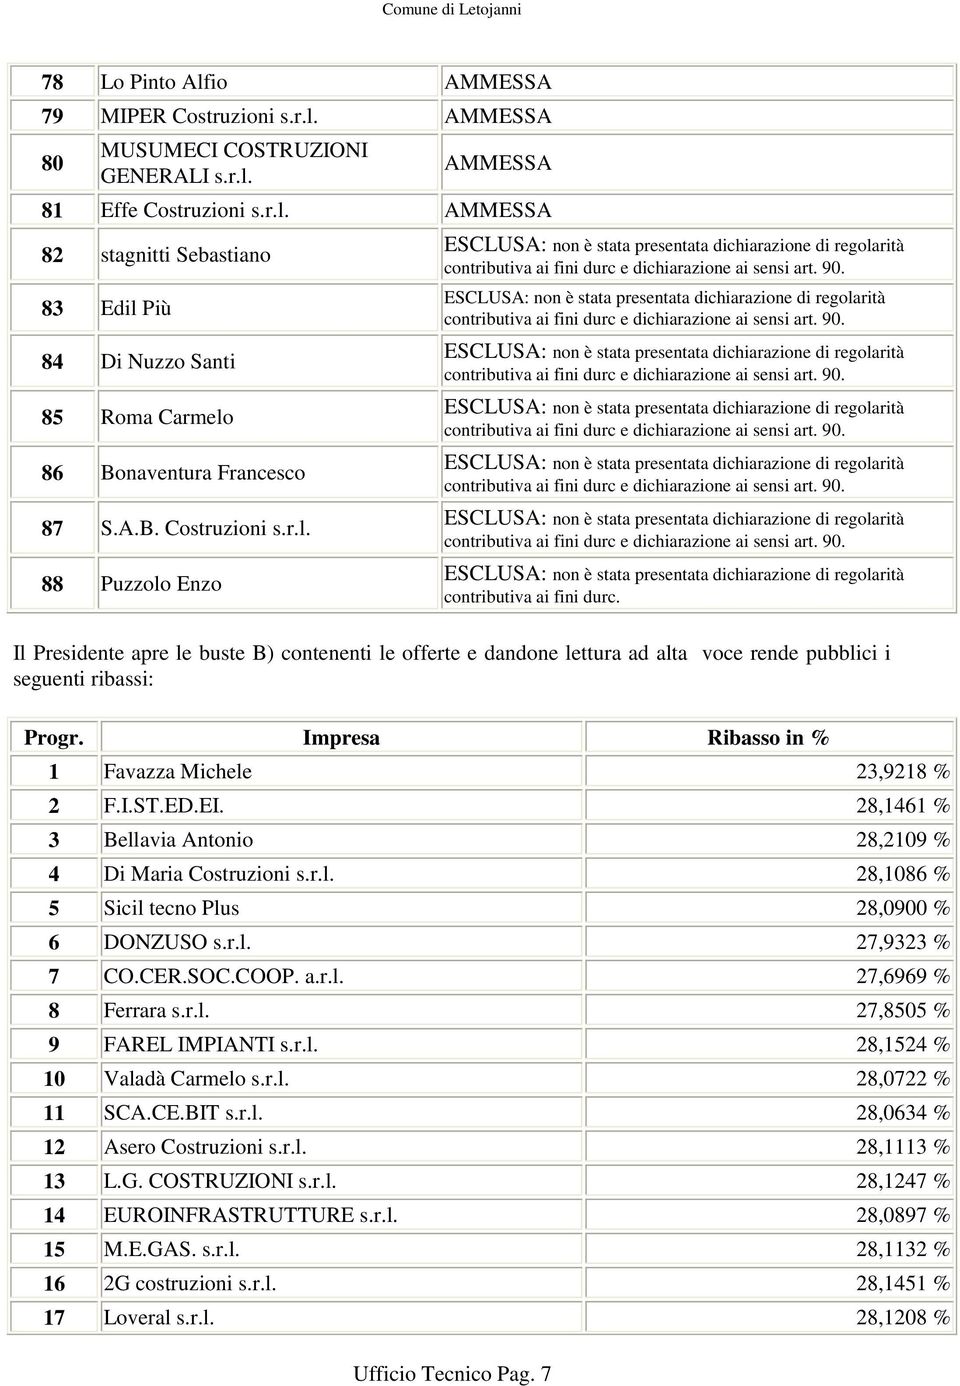 Impresa Ribasso in % 1 Favazza Michele 23,9218 % 2 F.I.ST.ED.EI. 28,1461 % 3 Bellavia Antonio 28,2109 % 4 Di Maria Costruzioni s.r.l. 28,1086 % 5 Sicil tecno Plus 28,0900 % 6 DONZUSO s.r.l. 27,9323 % 7 CO.